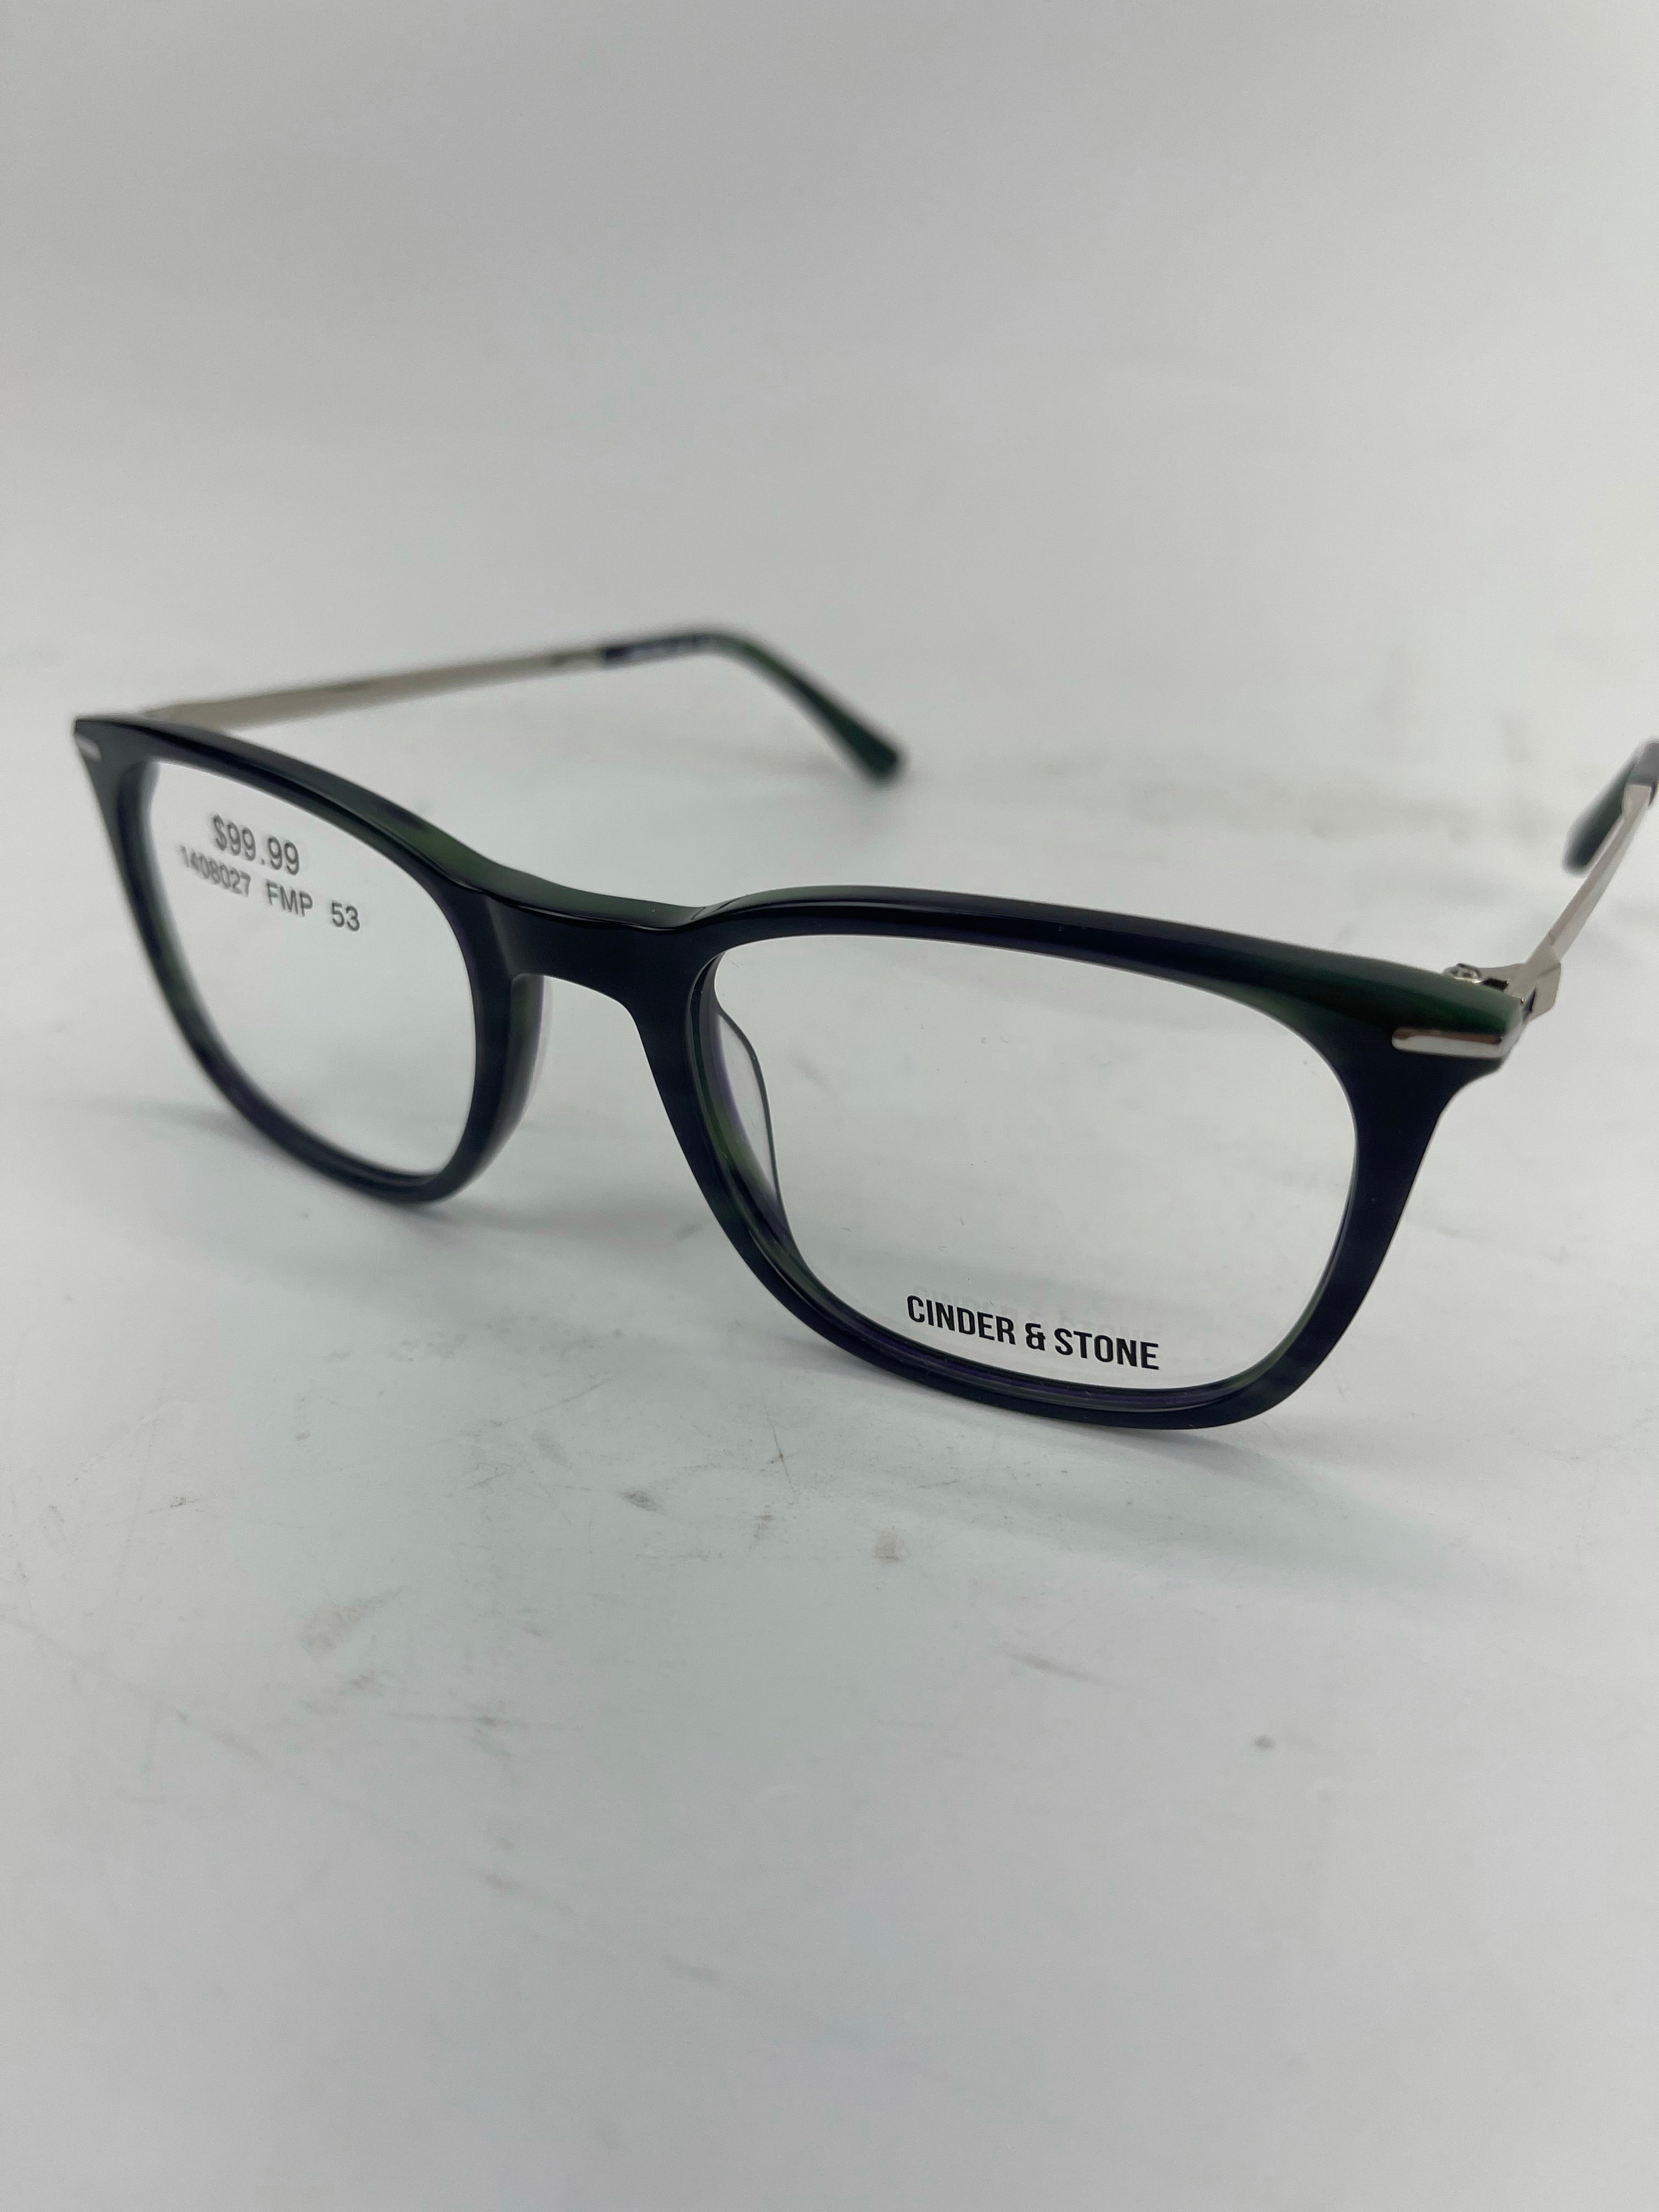 Cinder and Stone Green/Black Eyeglasses Frames